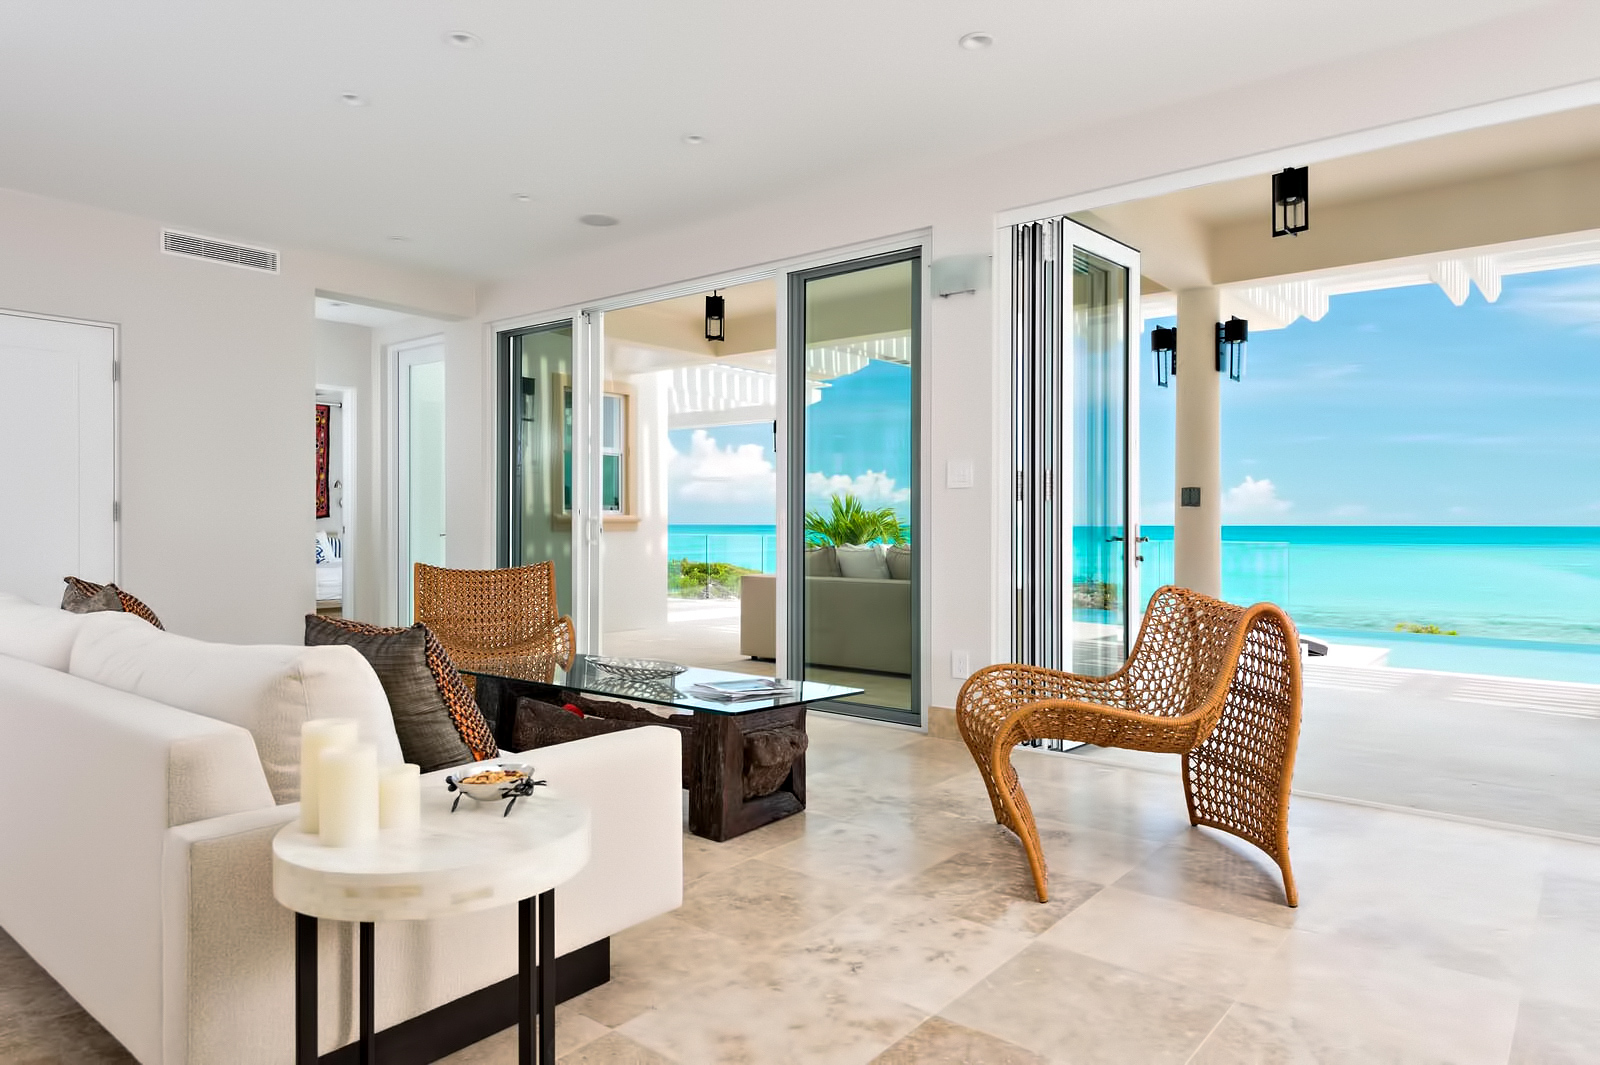 Luxury Villa Isla – Providenciales, Turks and Caicos Islands